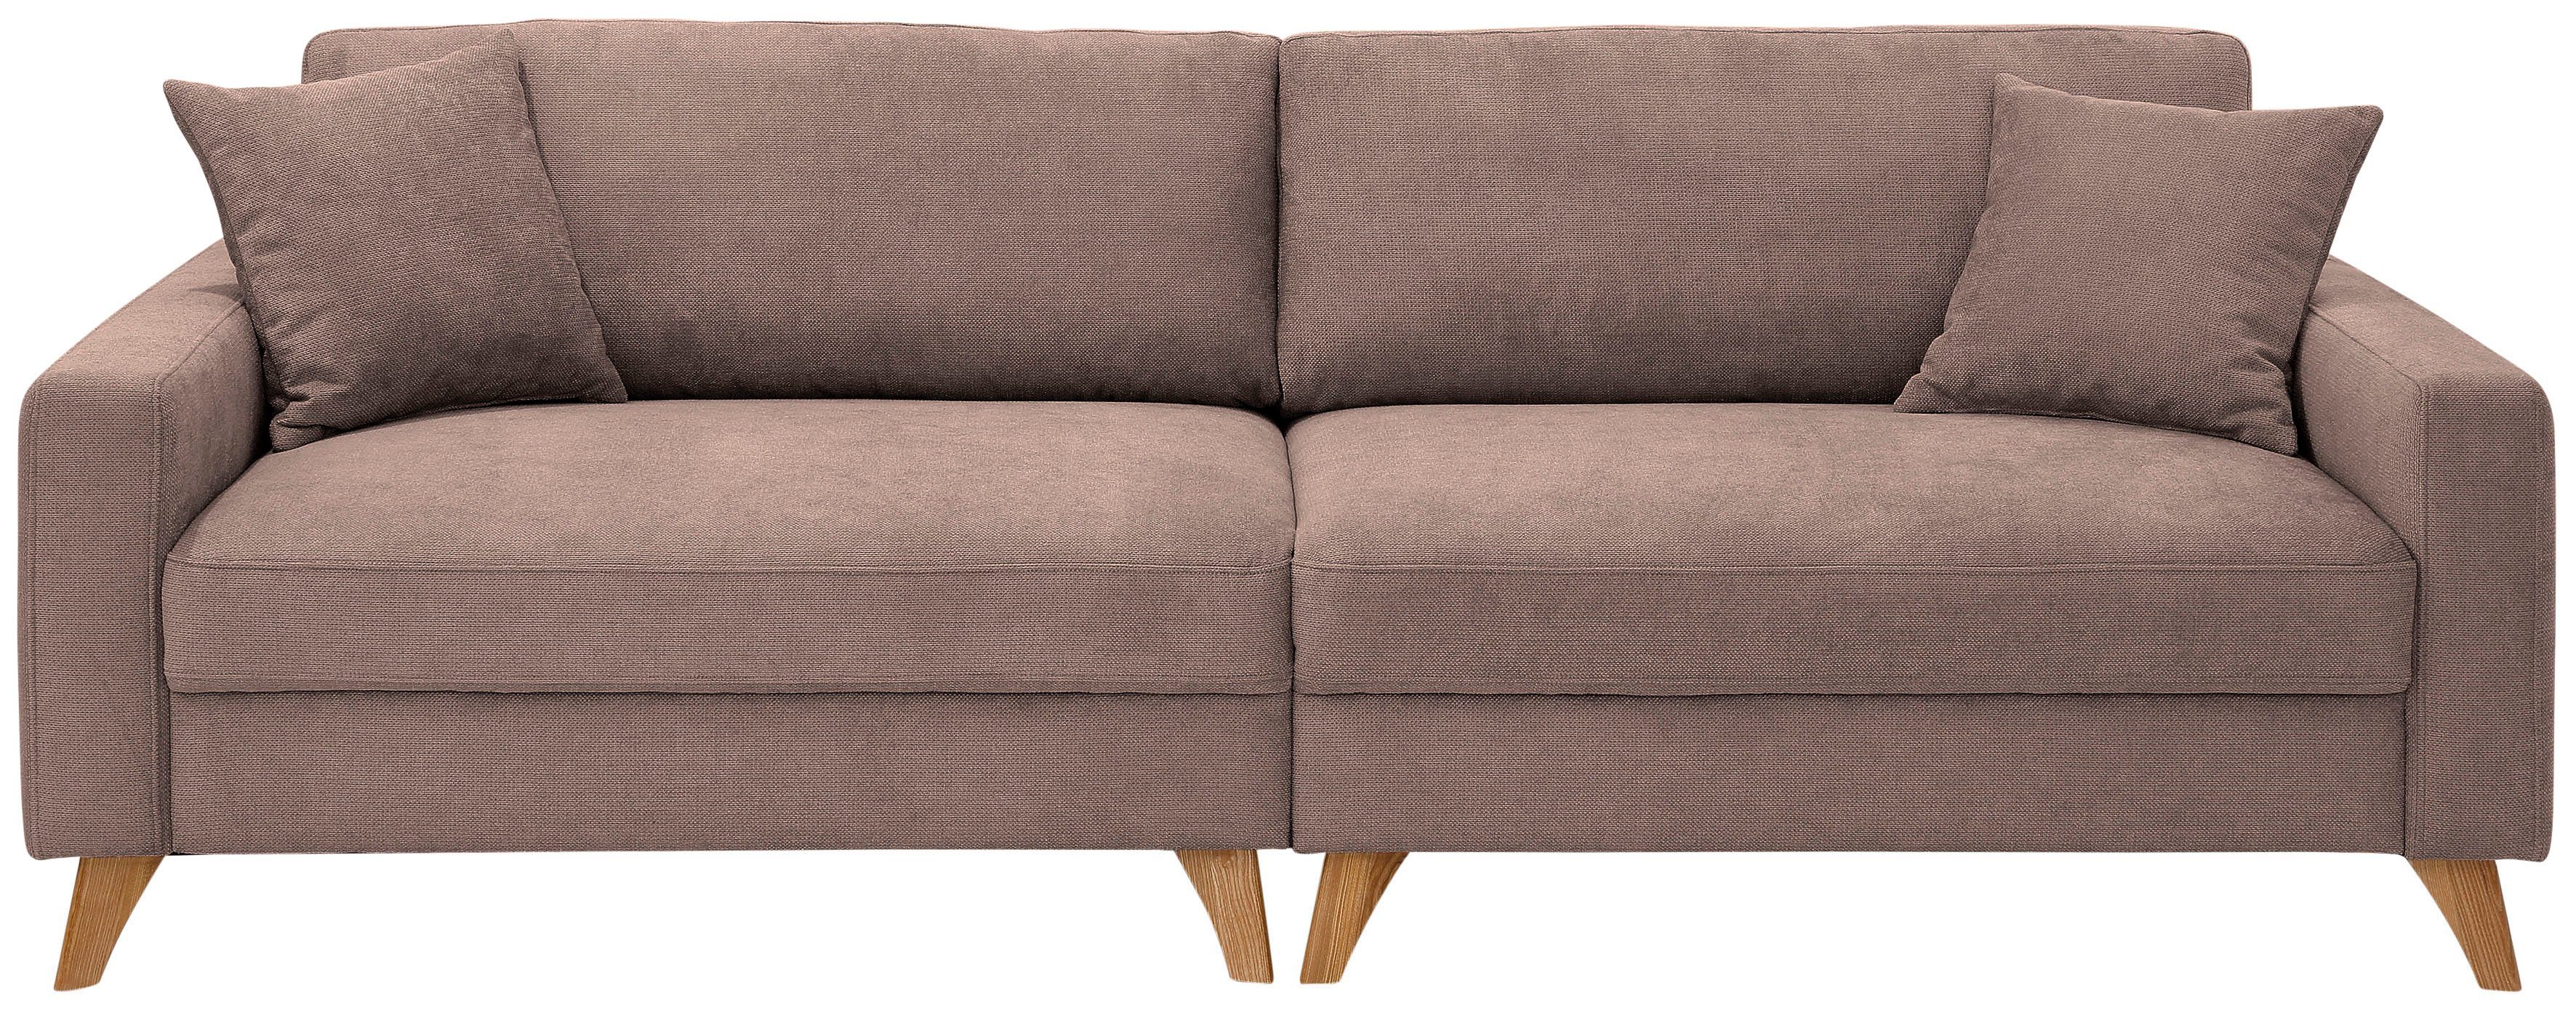 Home affaire Big-Sofa »Stanza Luxus«, Hohe Belastbarkeit pro Sitzplatz: 140kg. 2 Zierkissen, Keder, B/T/H: 254/113/89 cm-kaufen